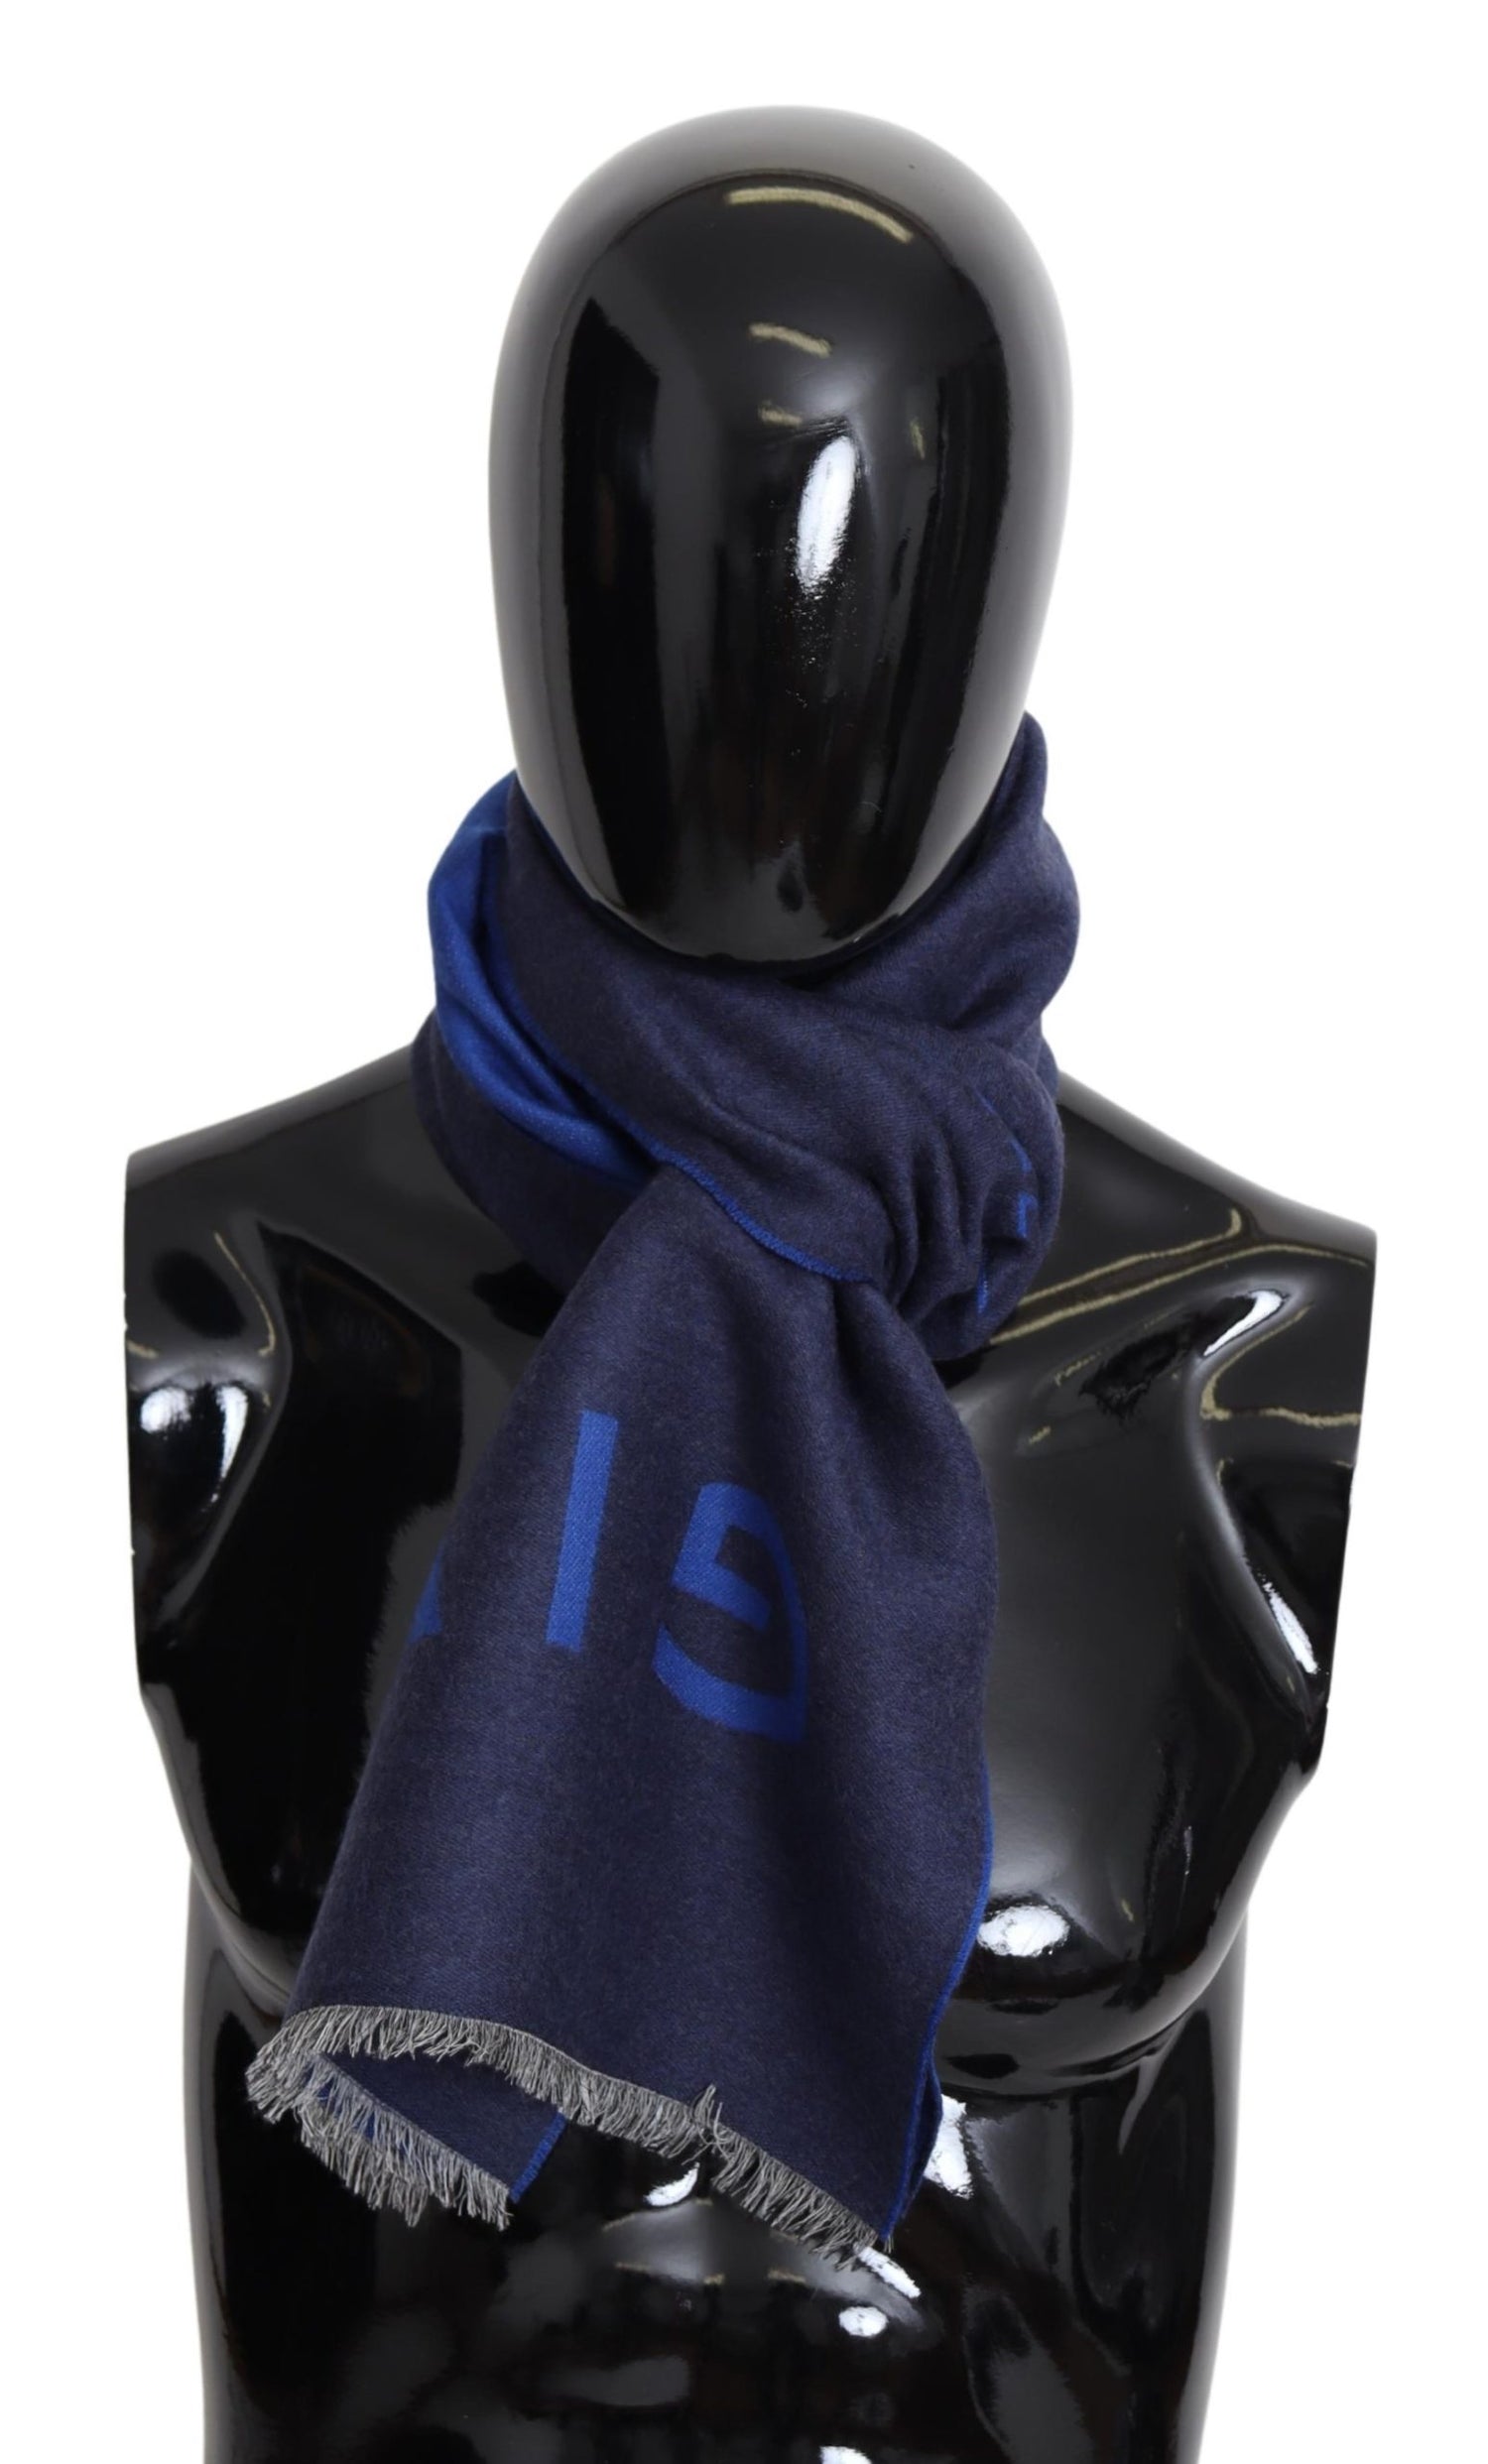 Givenchy Blue Wool Unisex Winter Warm  Scarf Wrap Shawl - DEA STILOSA MILANO